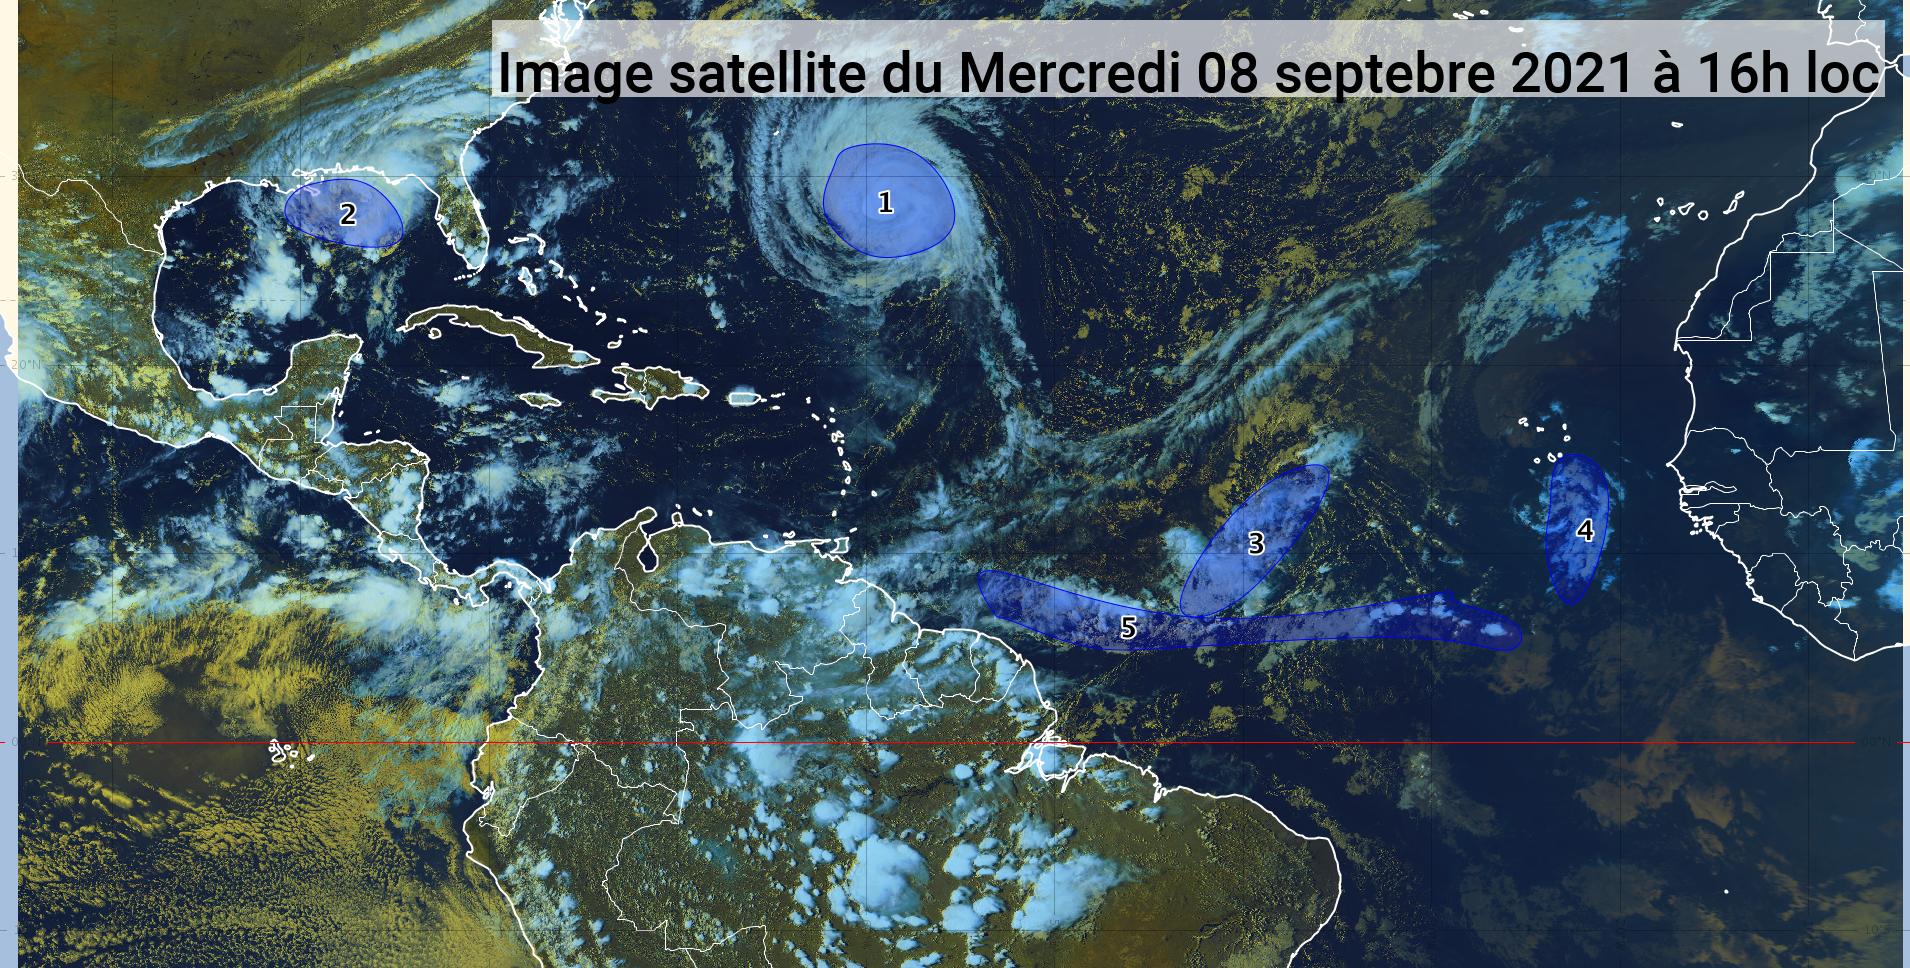     L'ouragan Larry s'éloigne, deux ondes tropicales sont sous surveillance (bulletin du 08/09/21) 

